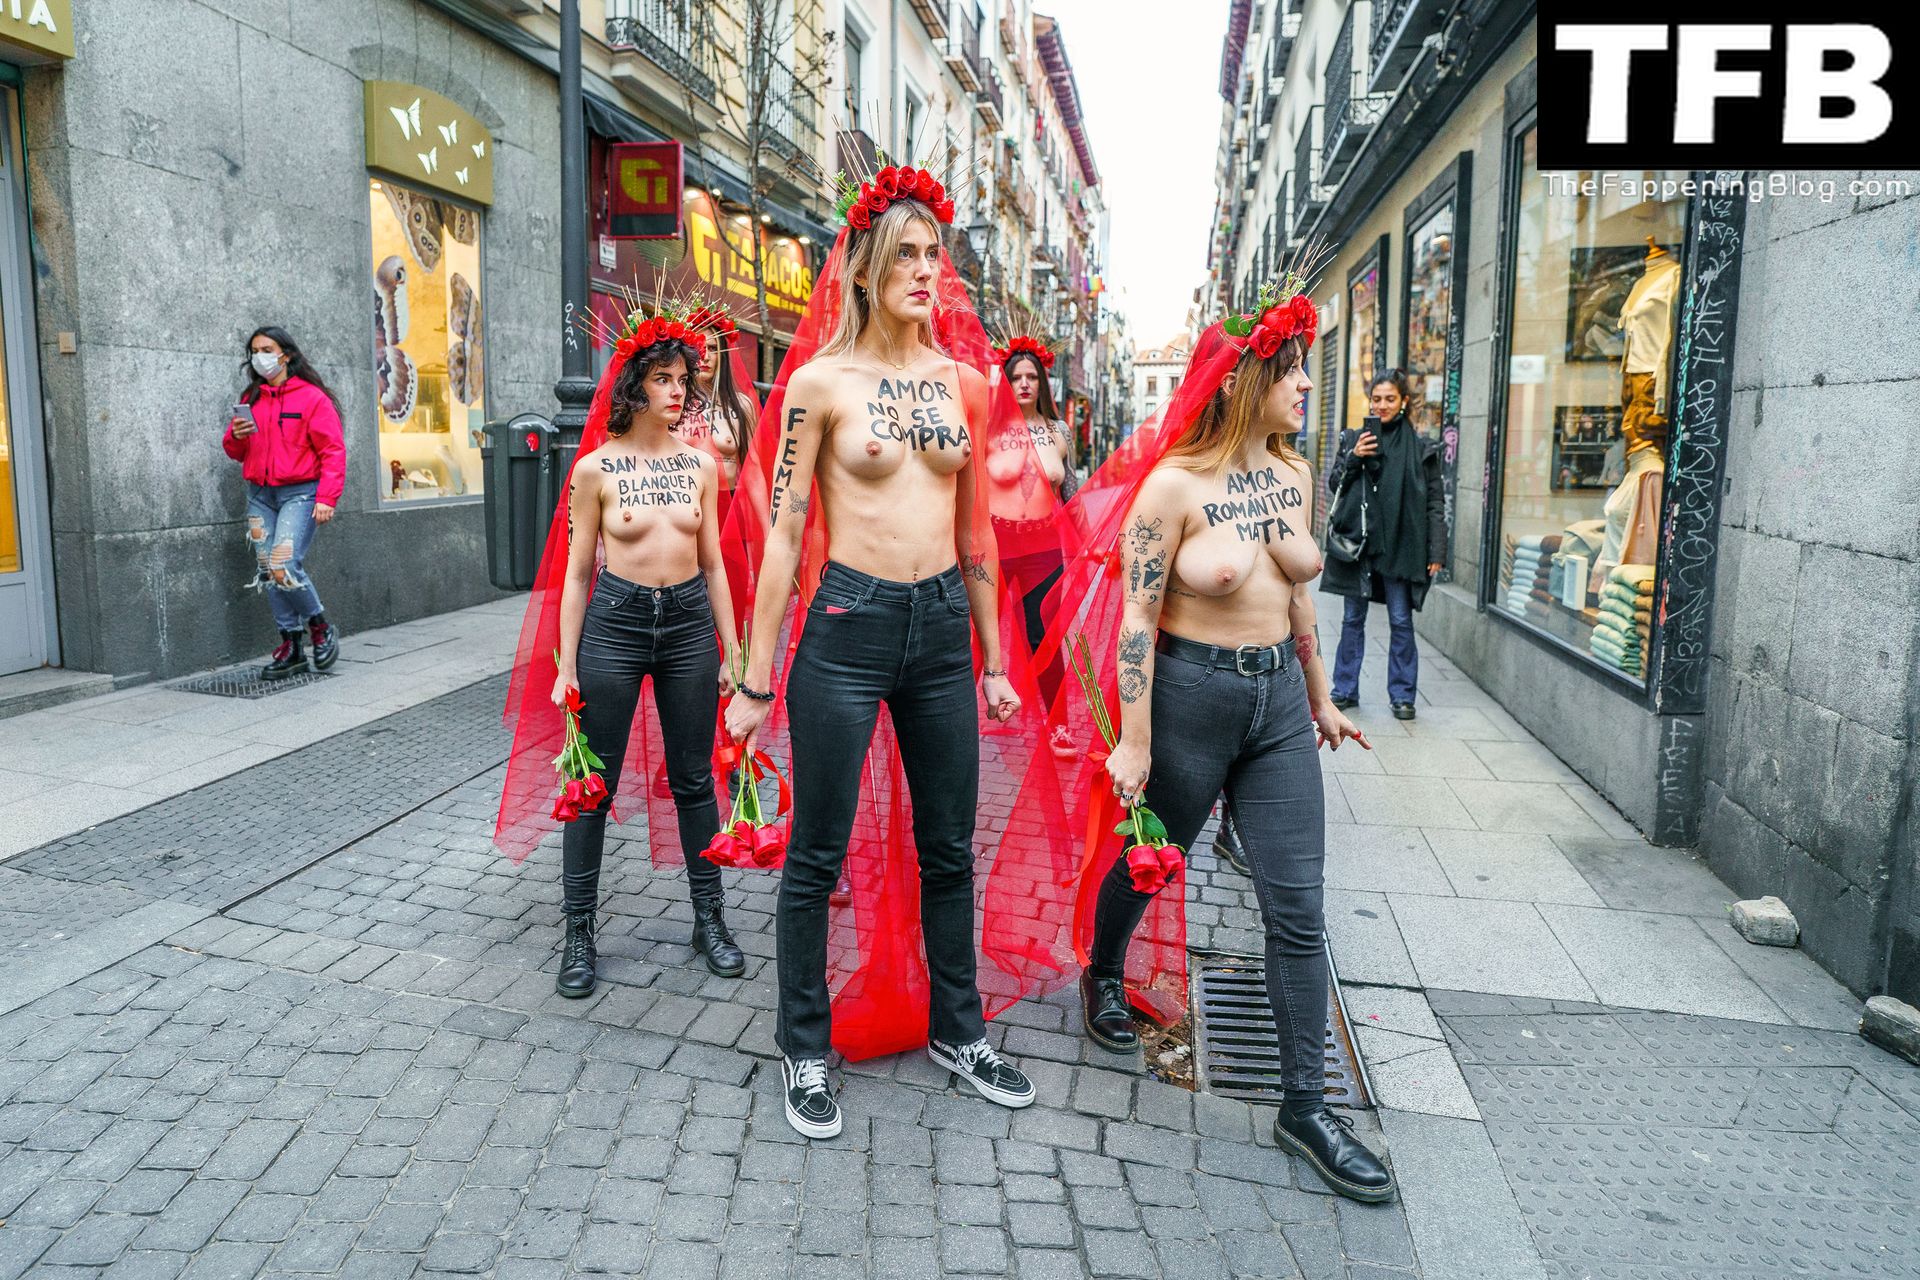 FEMEN-Topless-Girls-The-Fappening-Blog-6.jpg